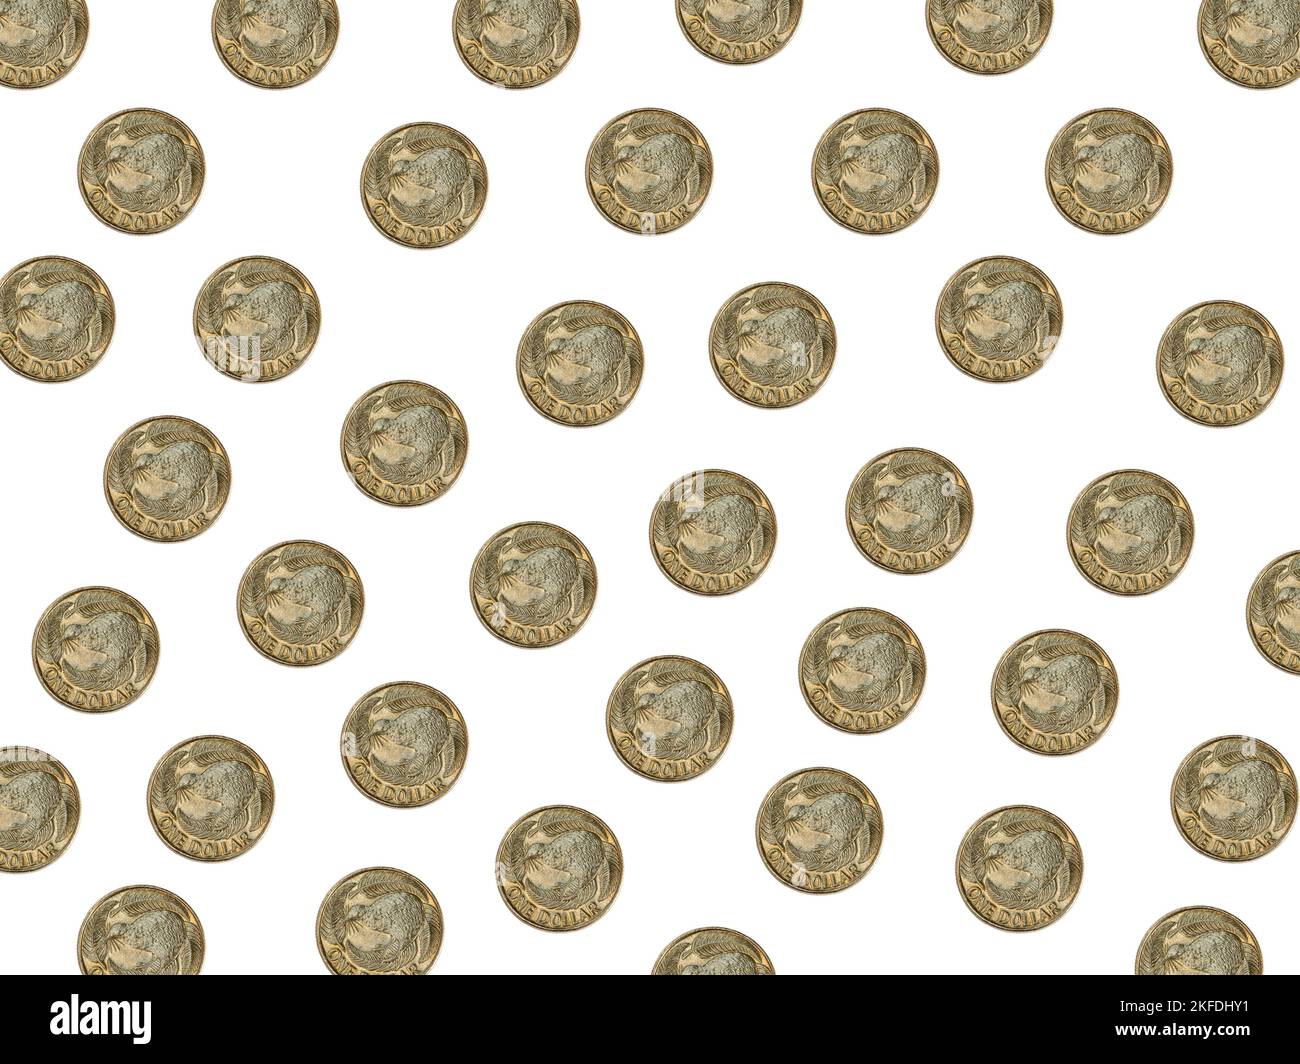 Viele neuseeländische 1-Dollar-Münzen isoliert auf Weiß. Zeigt den fliegenden Kiwi-Vogel, der bekanntermaßen mit Neuseeland assoziiert wird Stockfoto